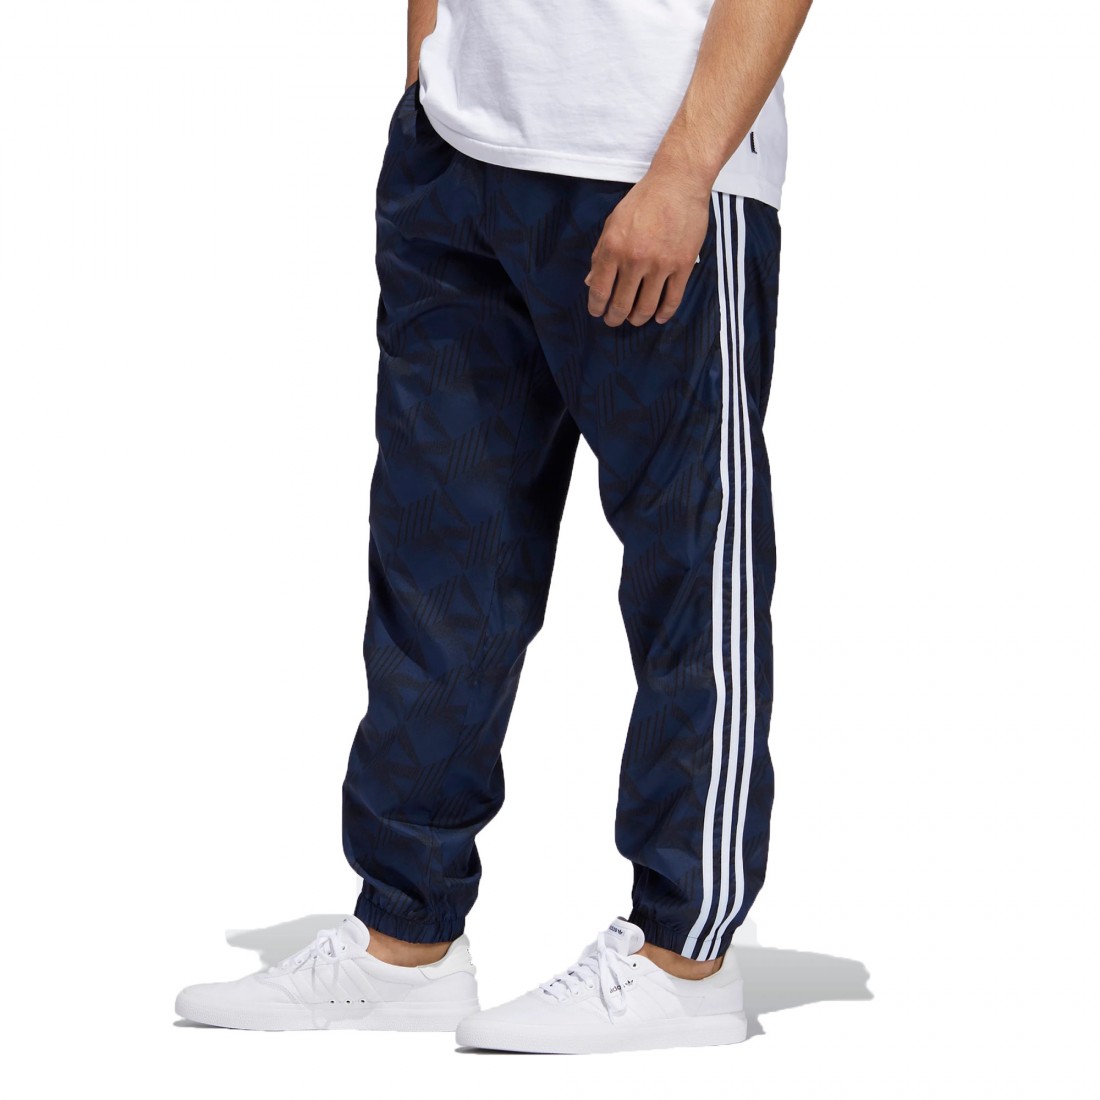 Pantalón Adidas Originals - Running Hombre